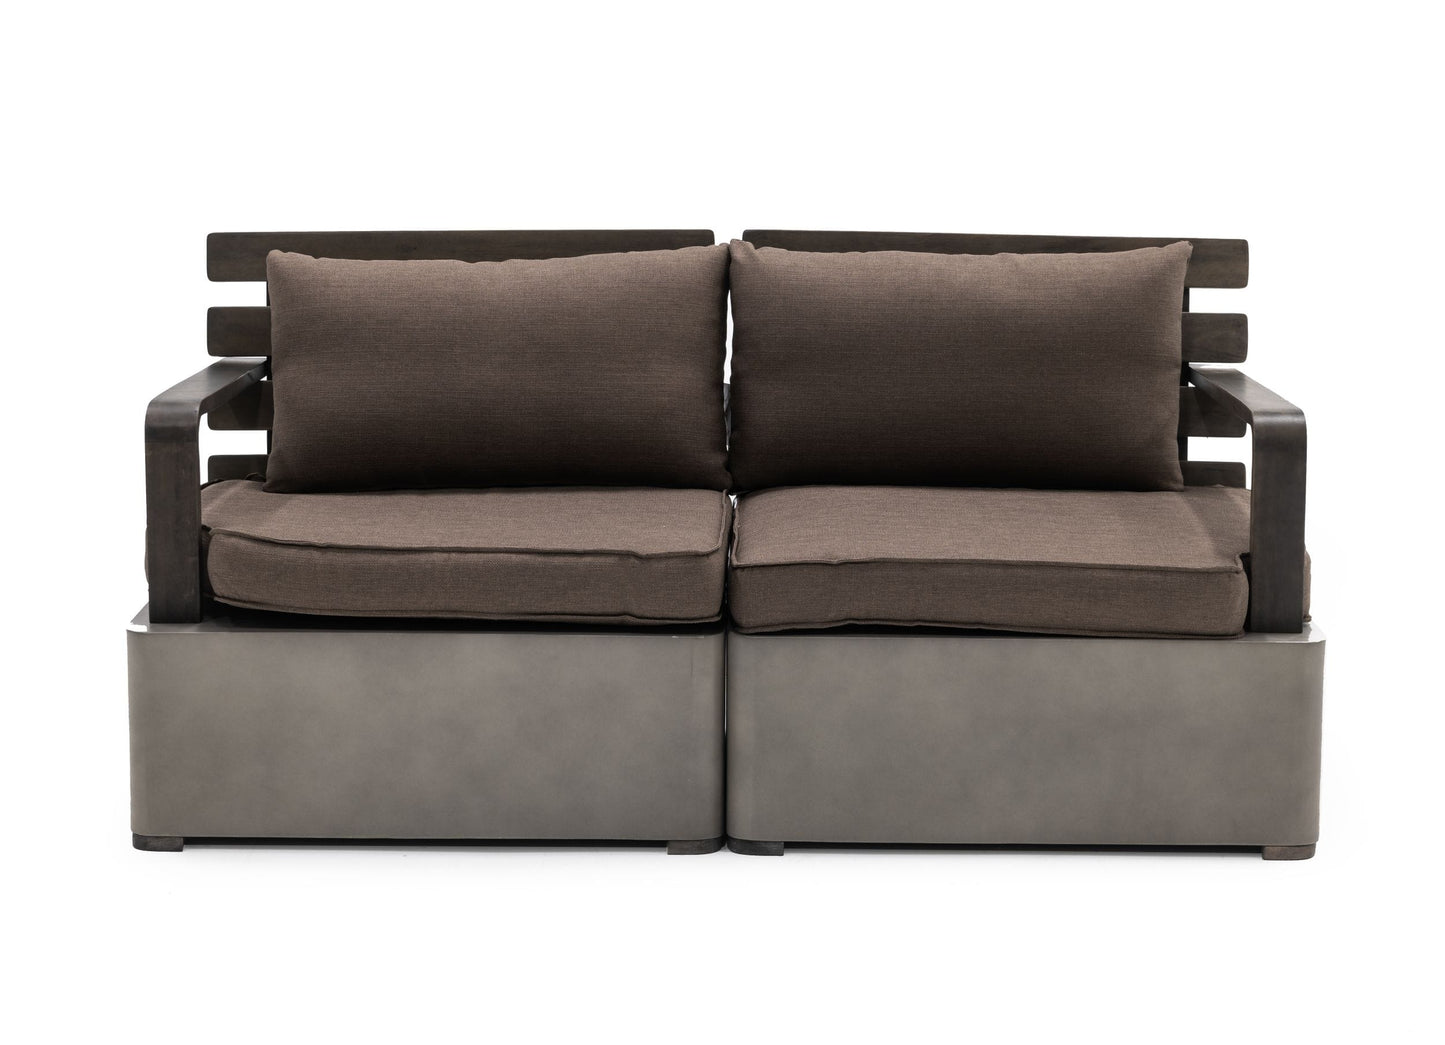 VIG Furniture Renava Garza Outdoor Concrete Acacia 2 Seater Sofa